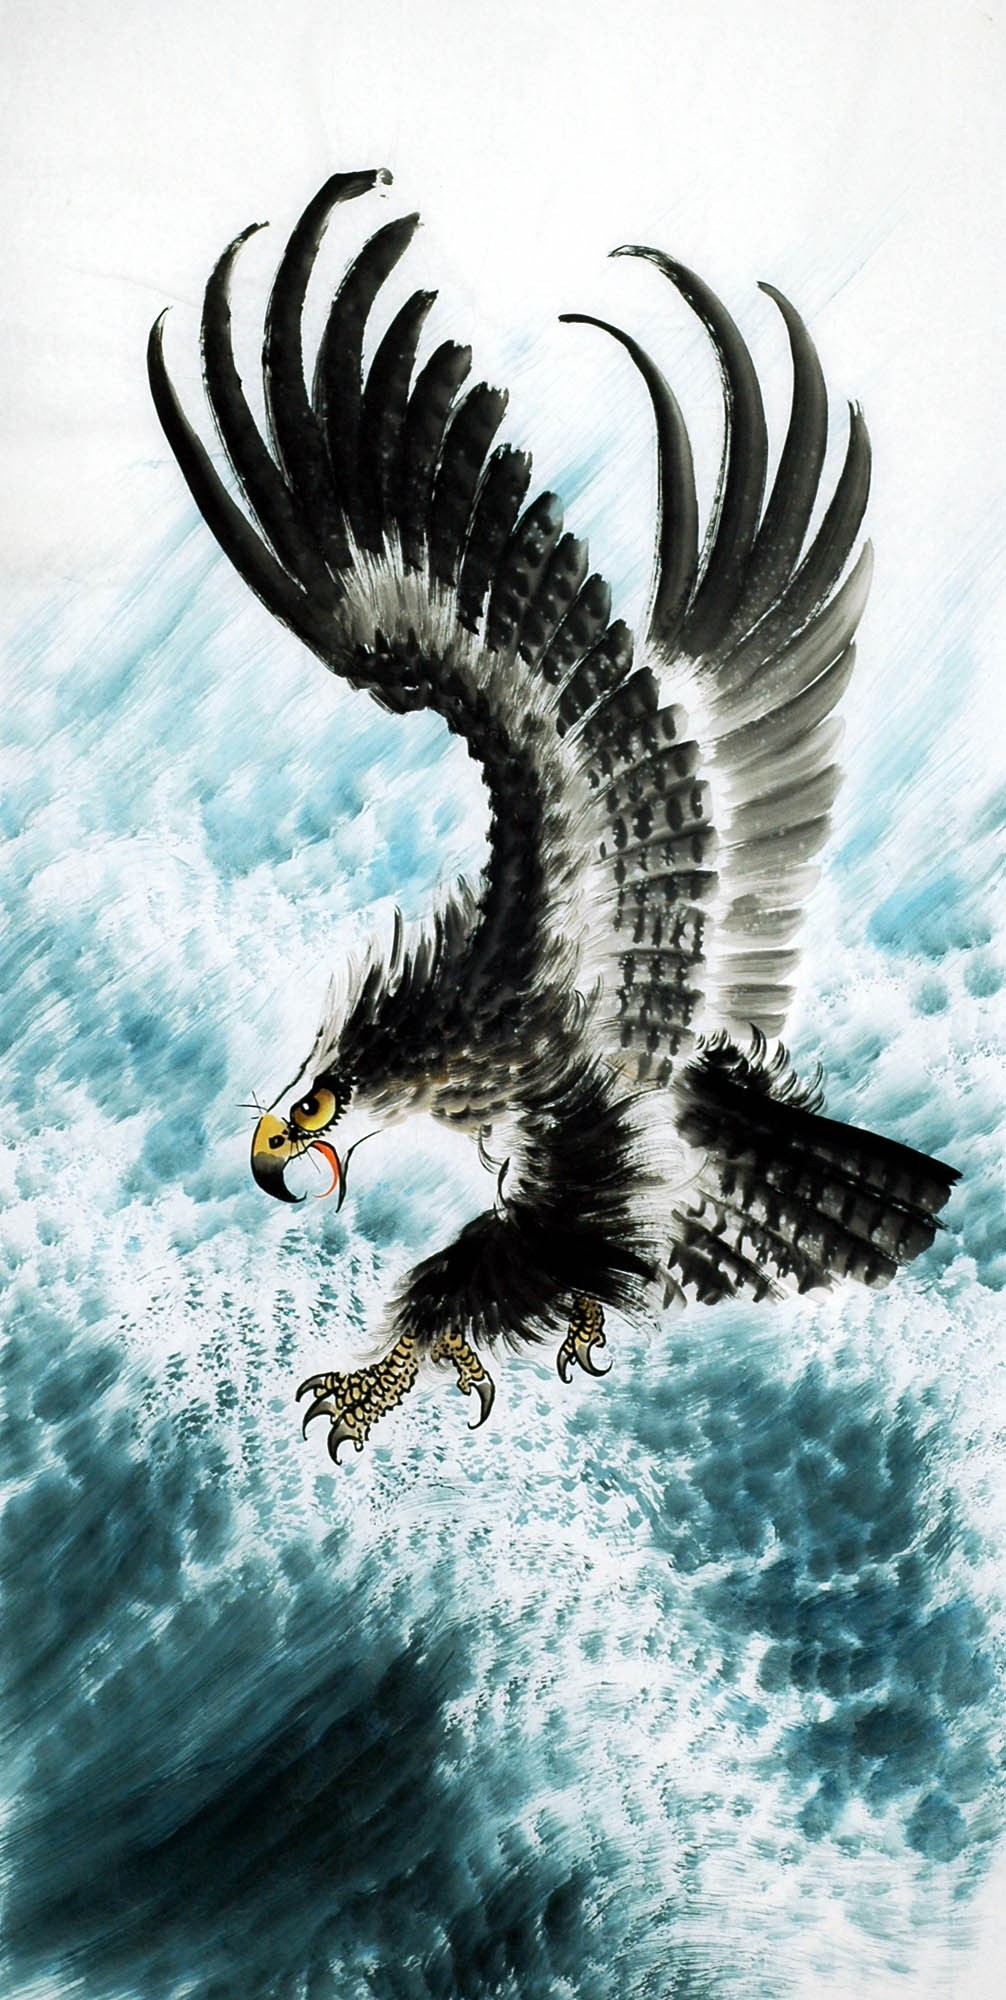 Chinese Eagle Painting - CNAG009170